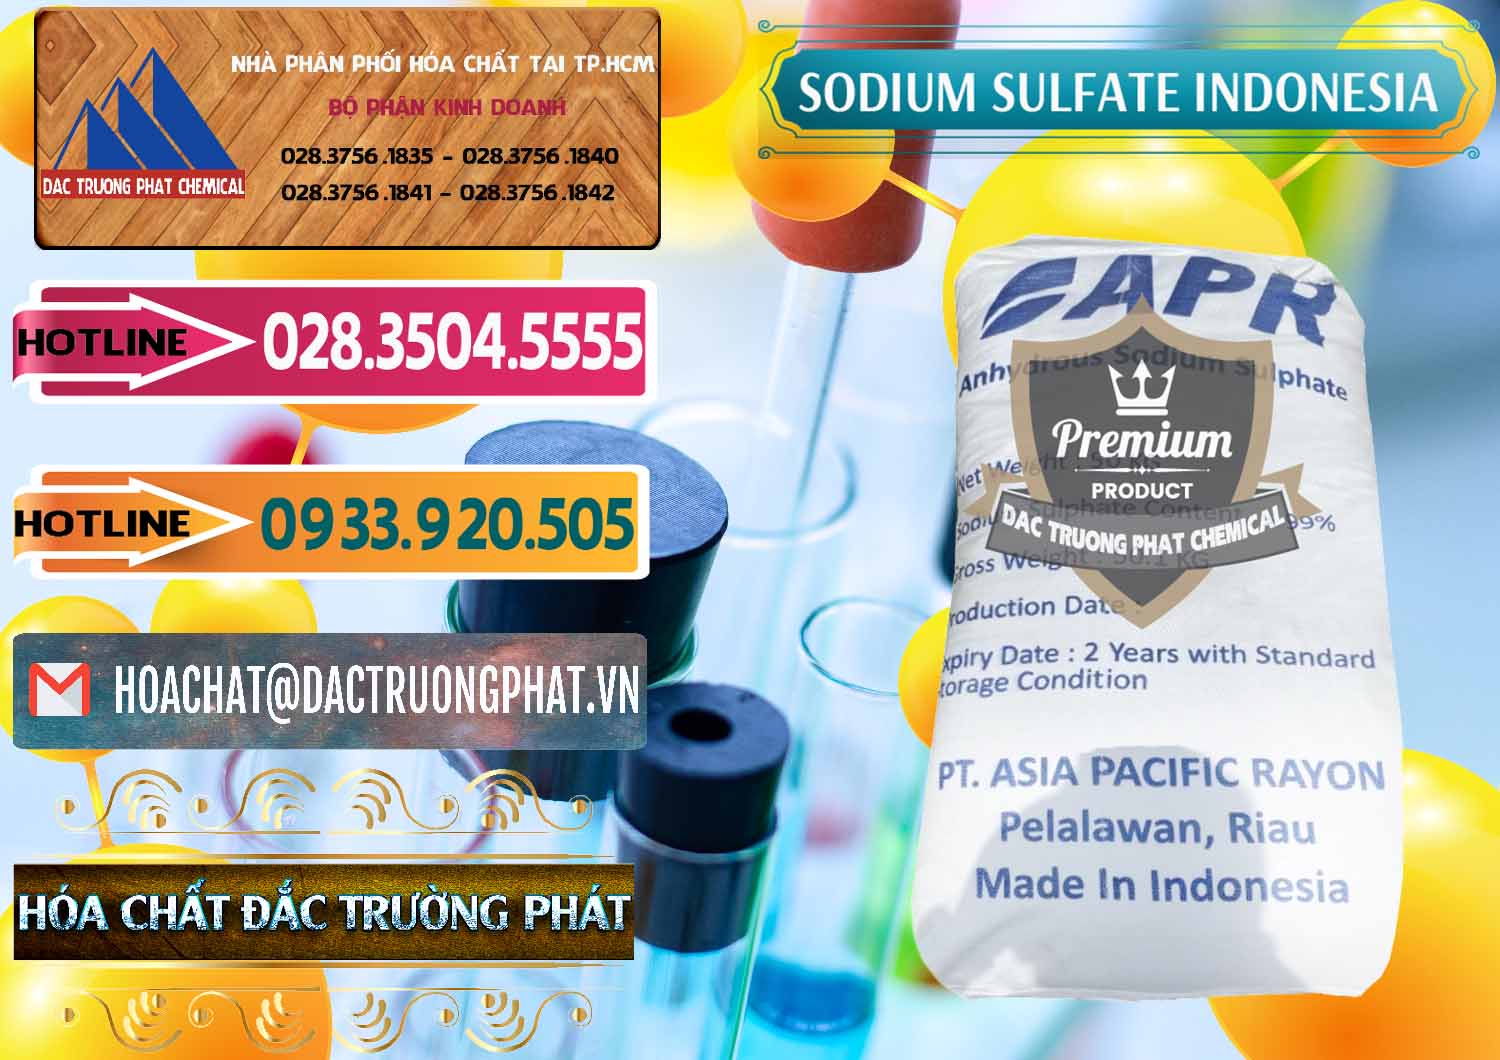 Đơn vị phân phối & bán Sodium Sulphate - Muối Sunfat Na2SO4 APR Indonesia - 0460 - Công ty chuyên bán - phân phối hóa chất tại TP.HCM - dactruongphat.vn